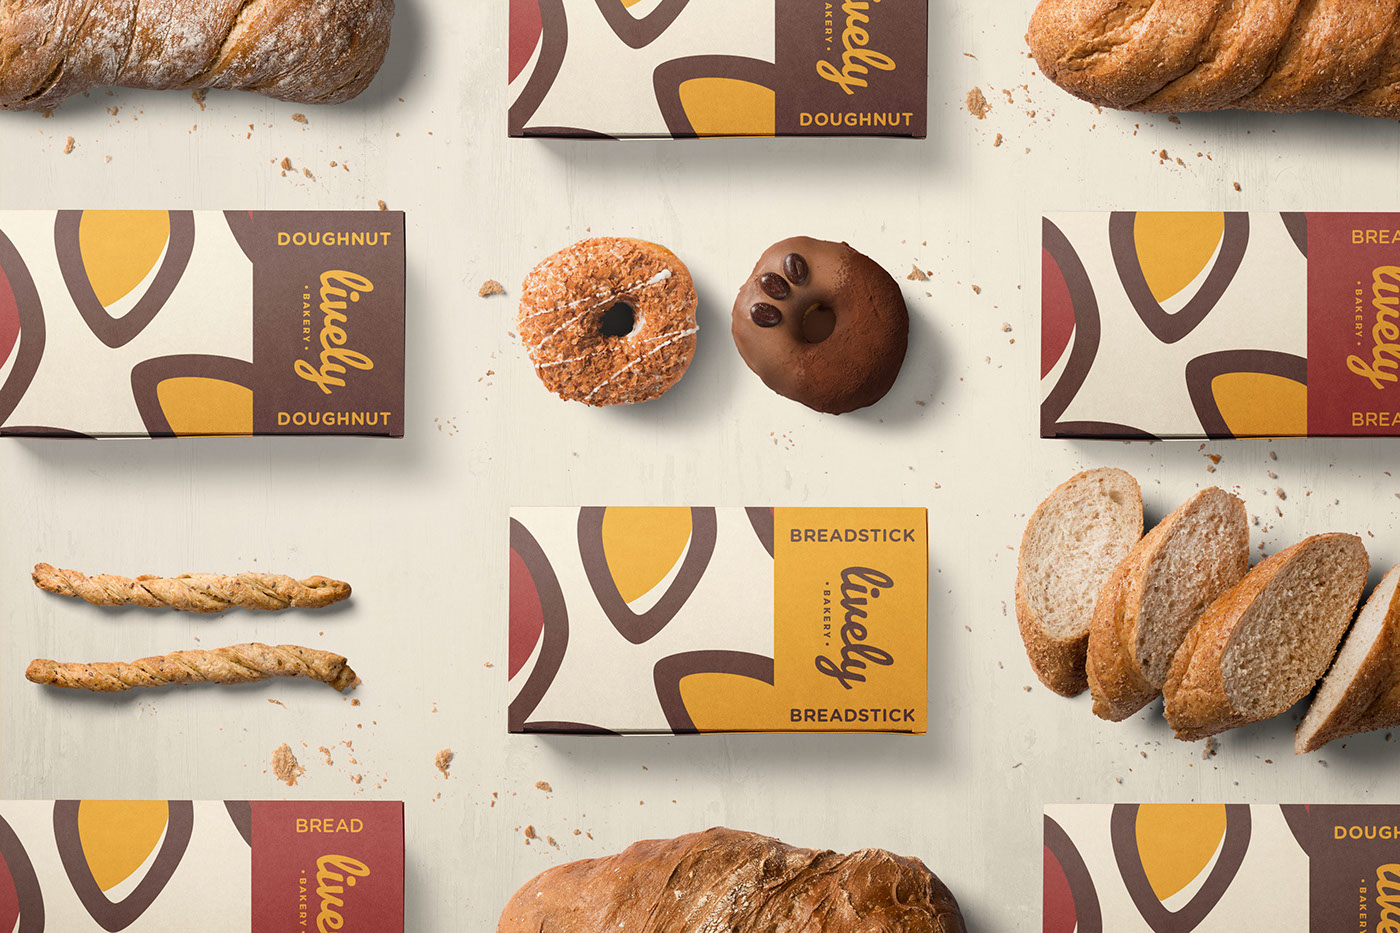 Logo Design branding  brand identity Mockup bakery restaurant Food  Identity Design Packaging lively